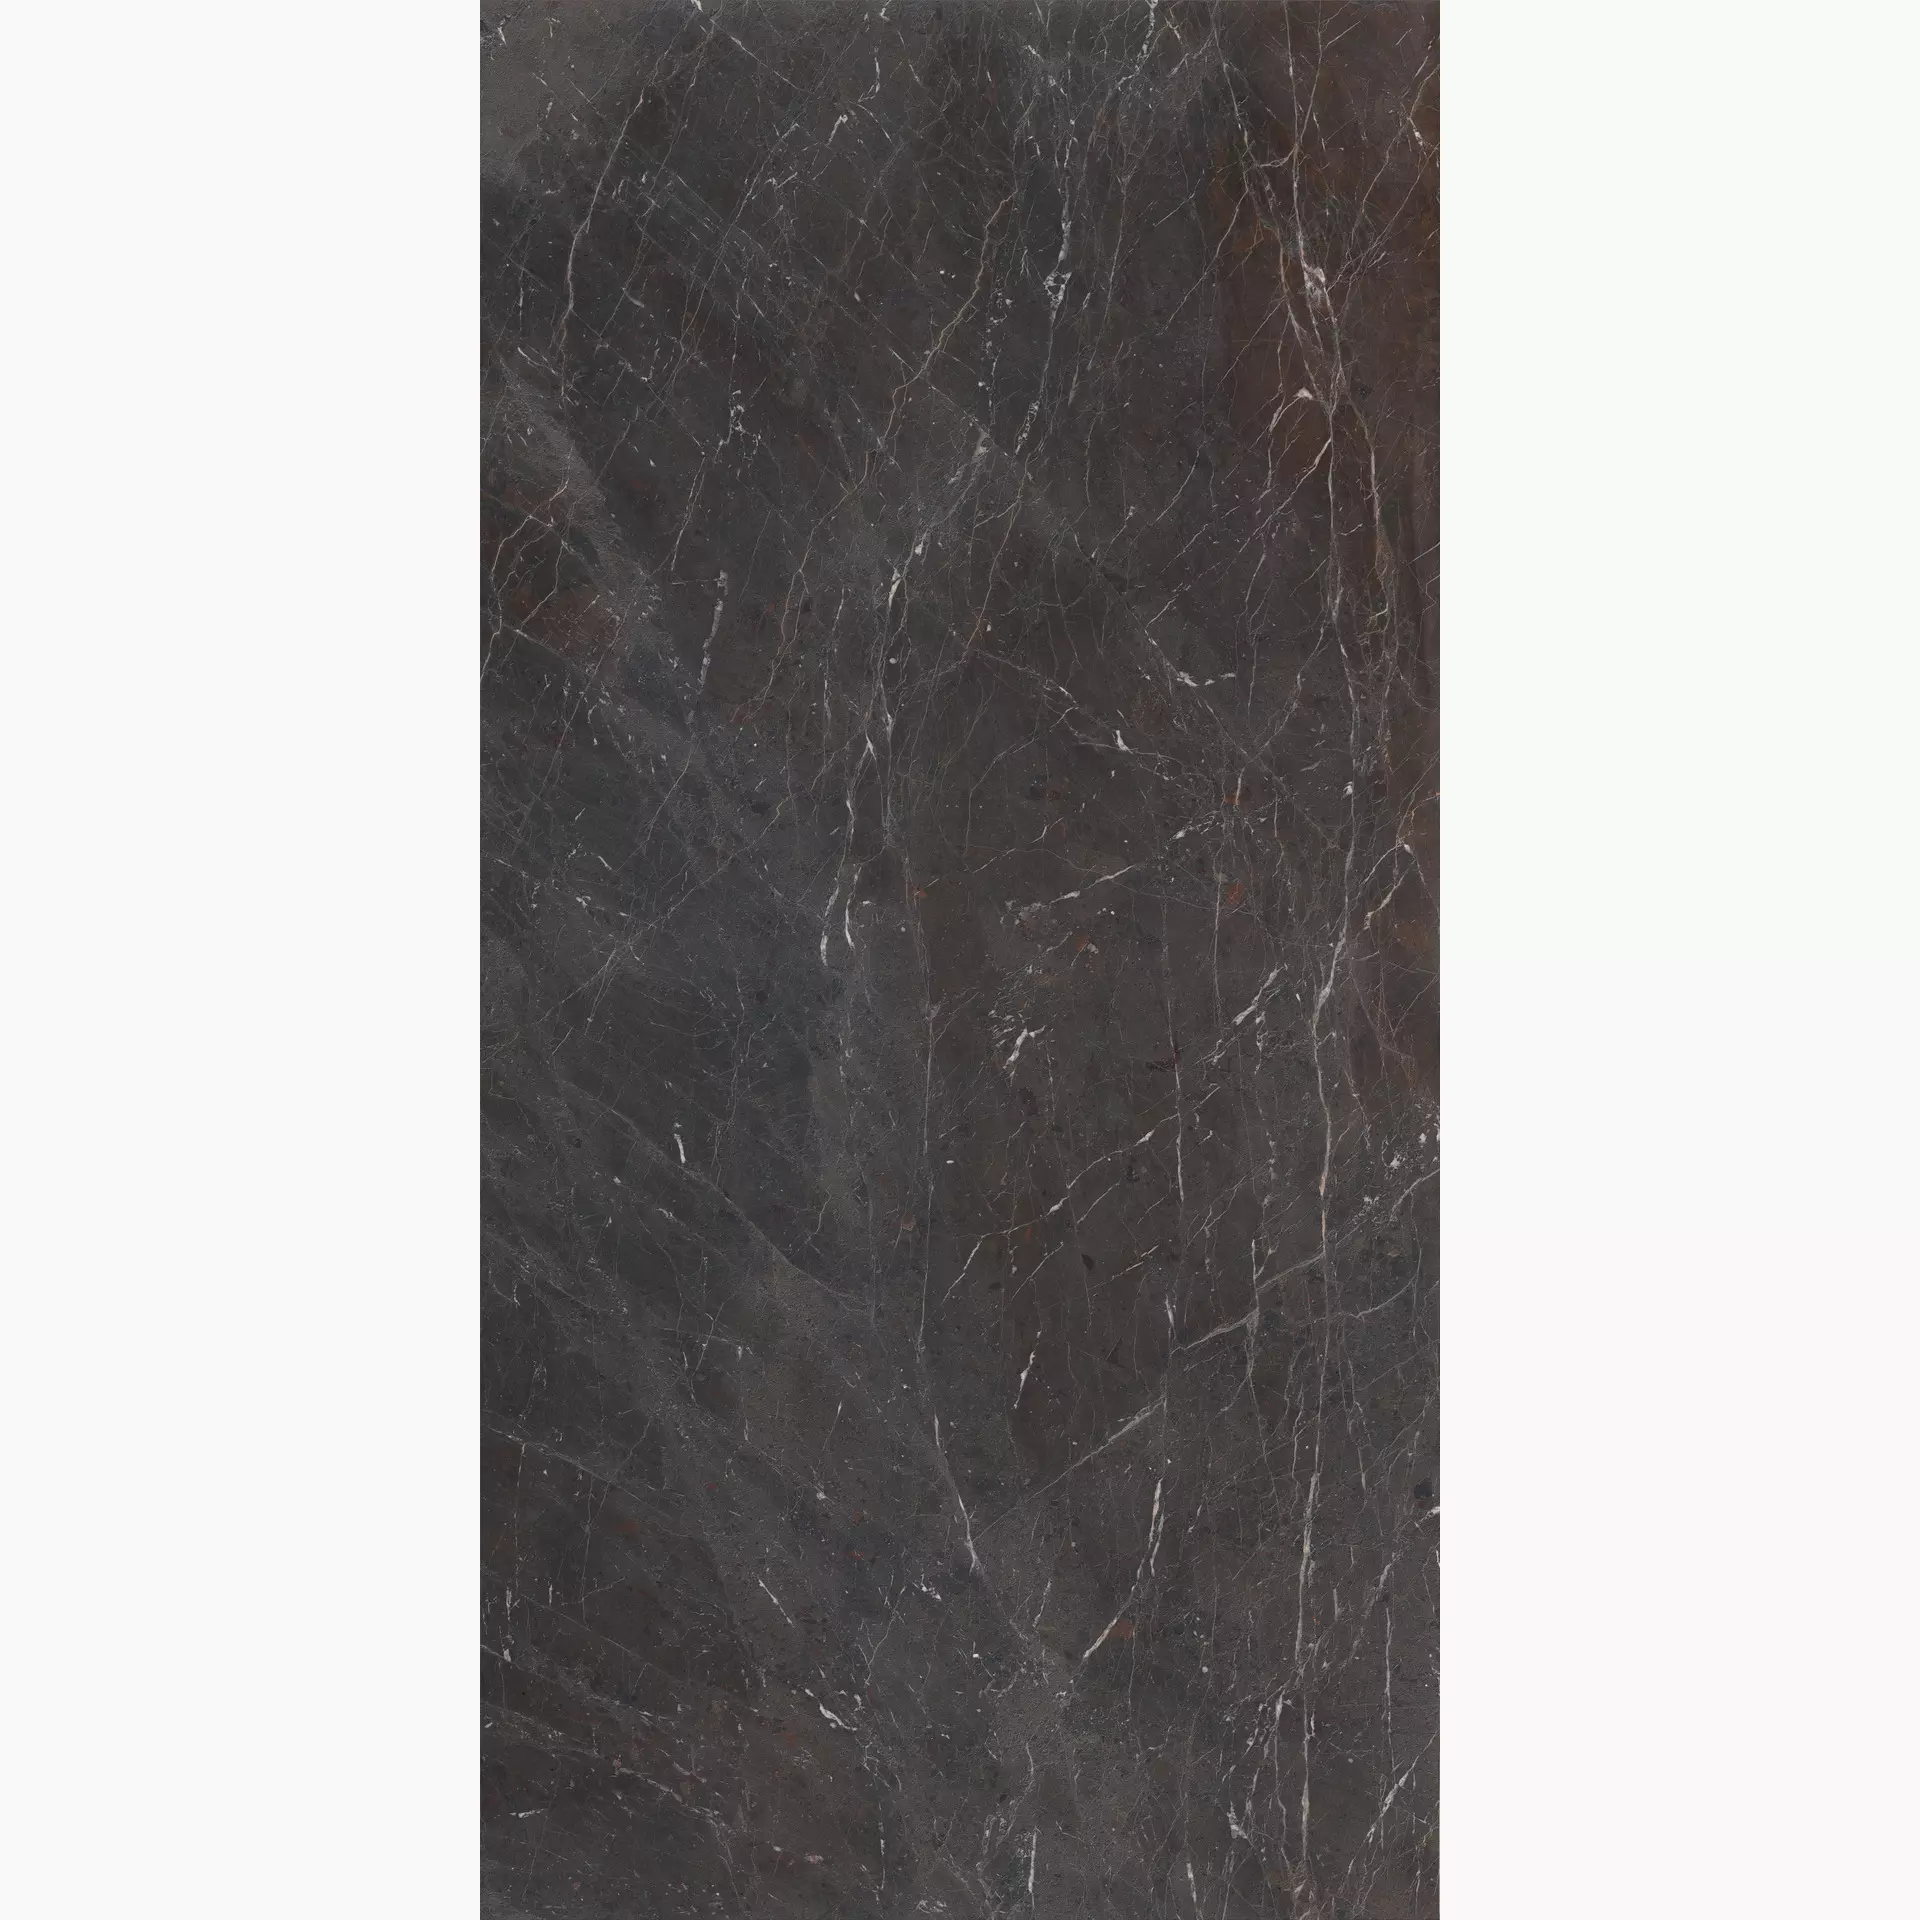 Marazzi Grande Stone Look Breccia Imperiale Satin Stuoiato MNN0 160x320cm rectified 6mm